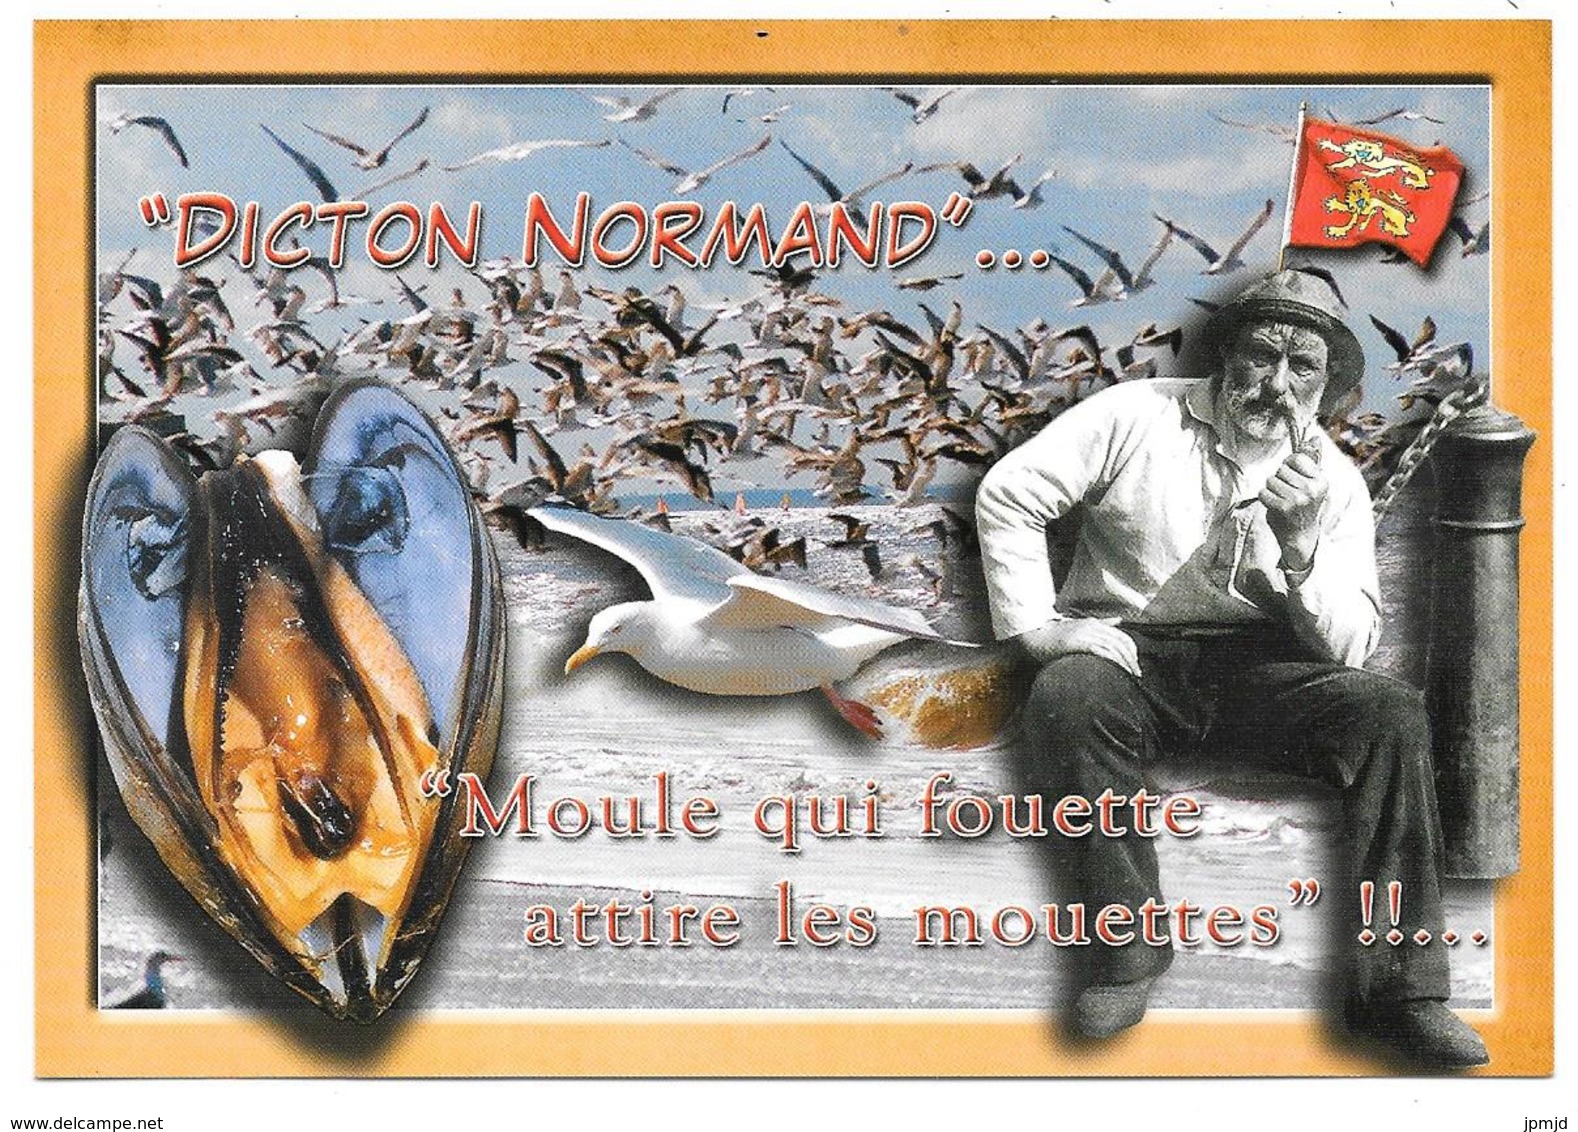 EN NORMANDIE - DICTON NORMAND : Moule Qui Fouette Attire Les Mouettes - éd. LE GOUBEY, Caen - Coquillage - Basse-Normandie